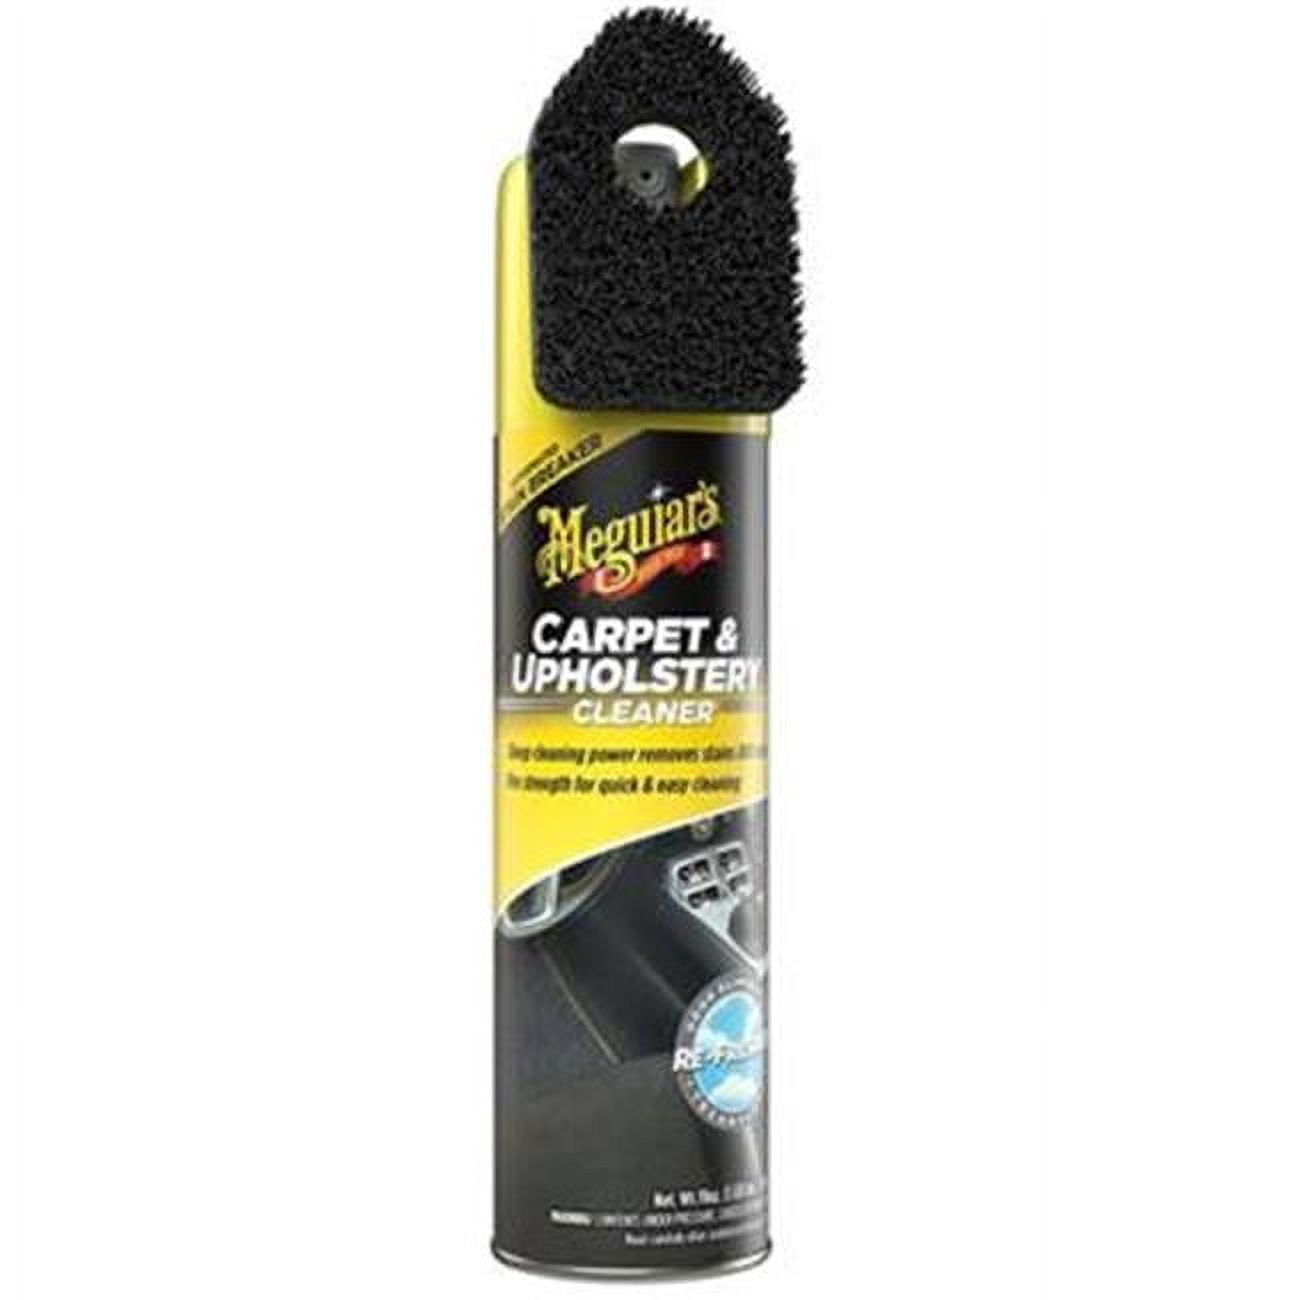 Meguiar's Carpet & Upholstery Cleaner, G191419, 19 Oz, Foam Spray